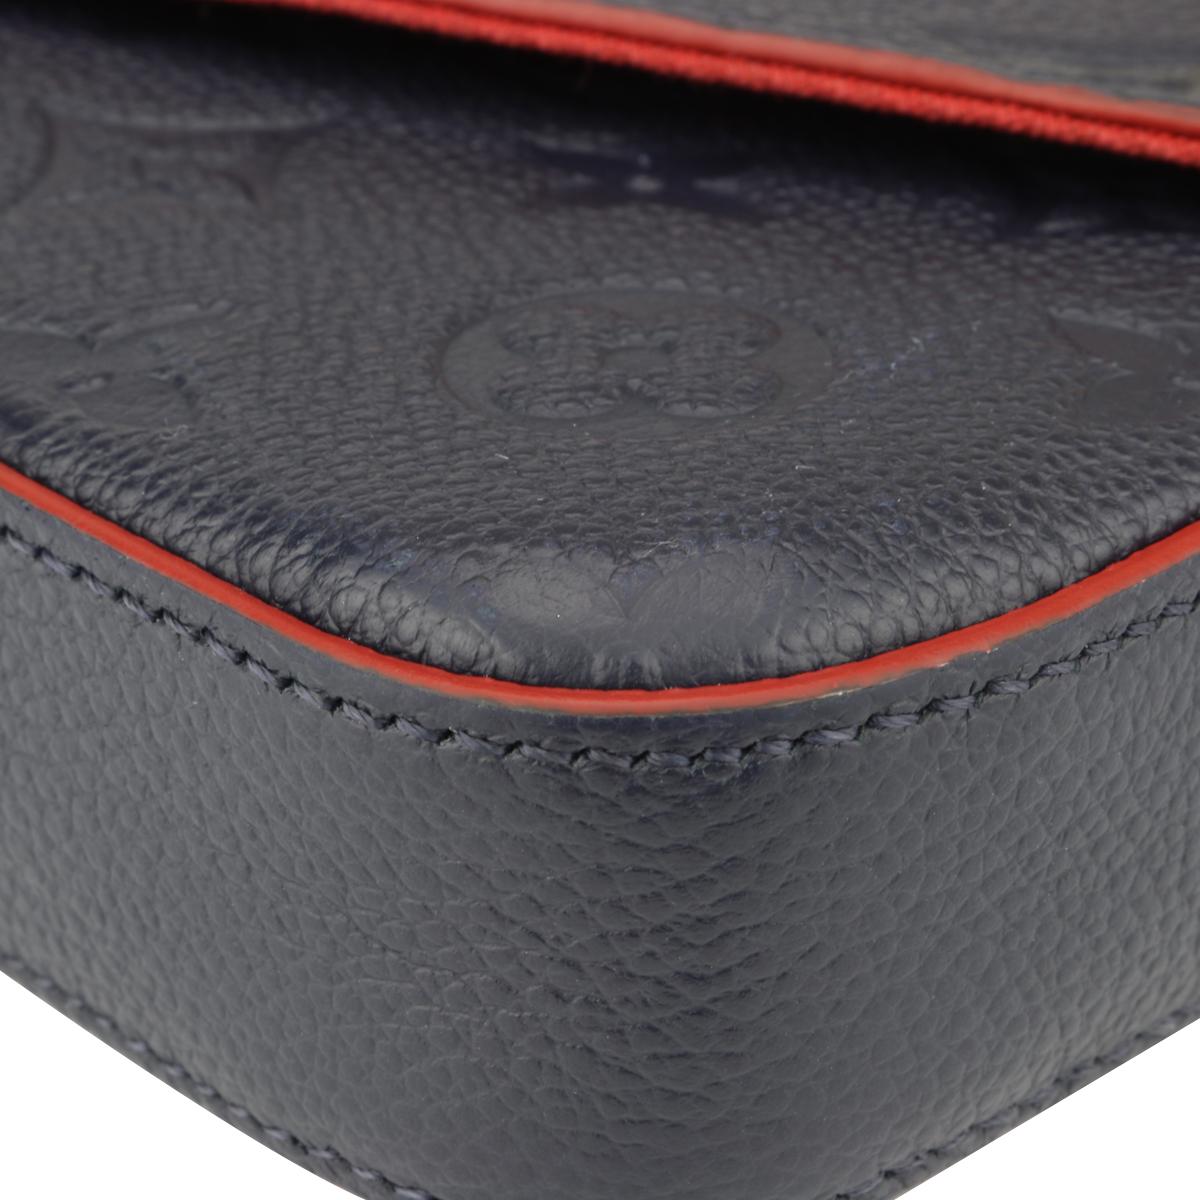 Louis Vuitton Félicie Pochette Bag Marine Rouge Monogram Empreinte w/GHW 2018  1